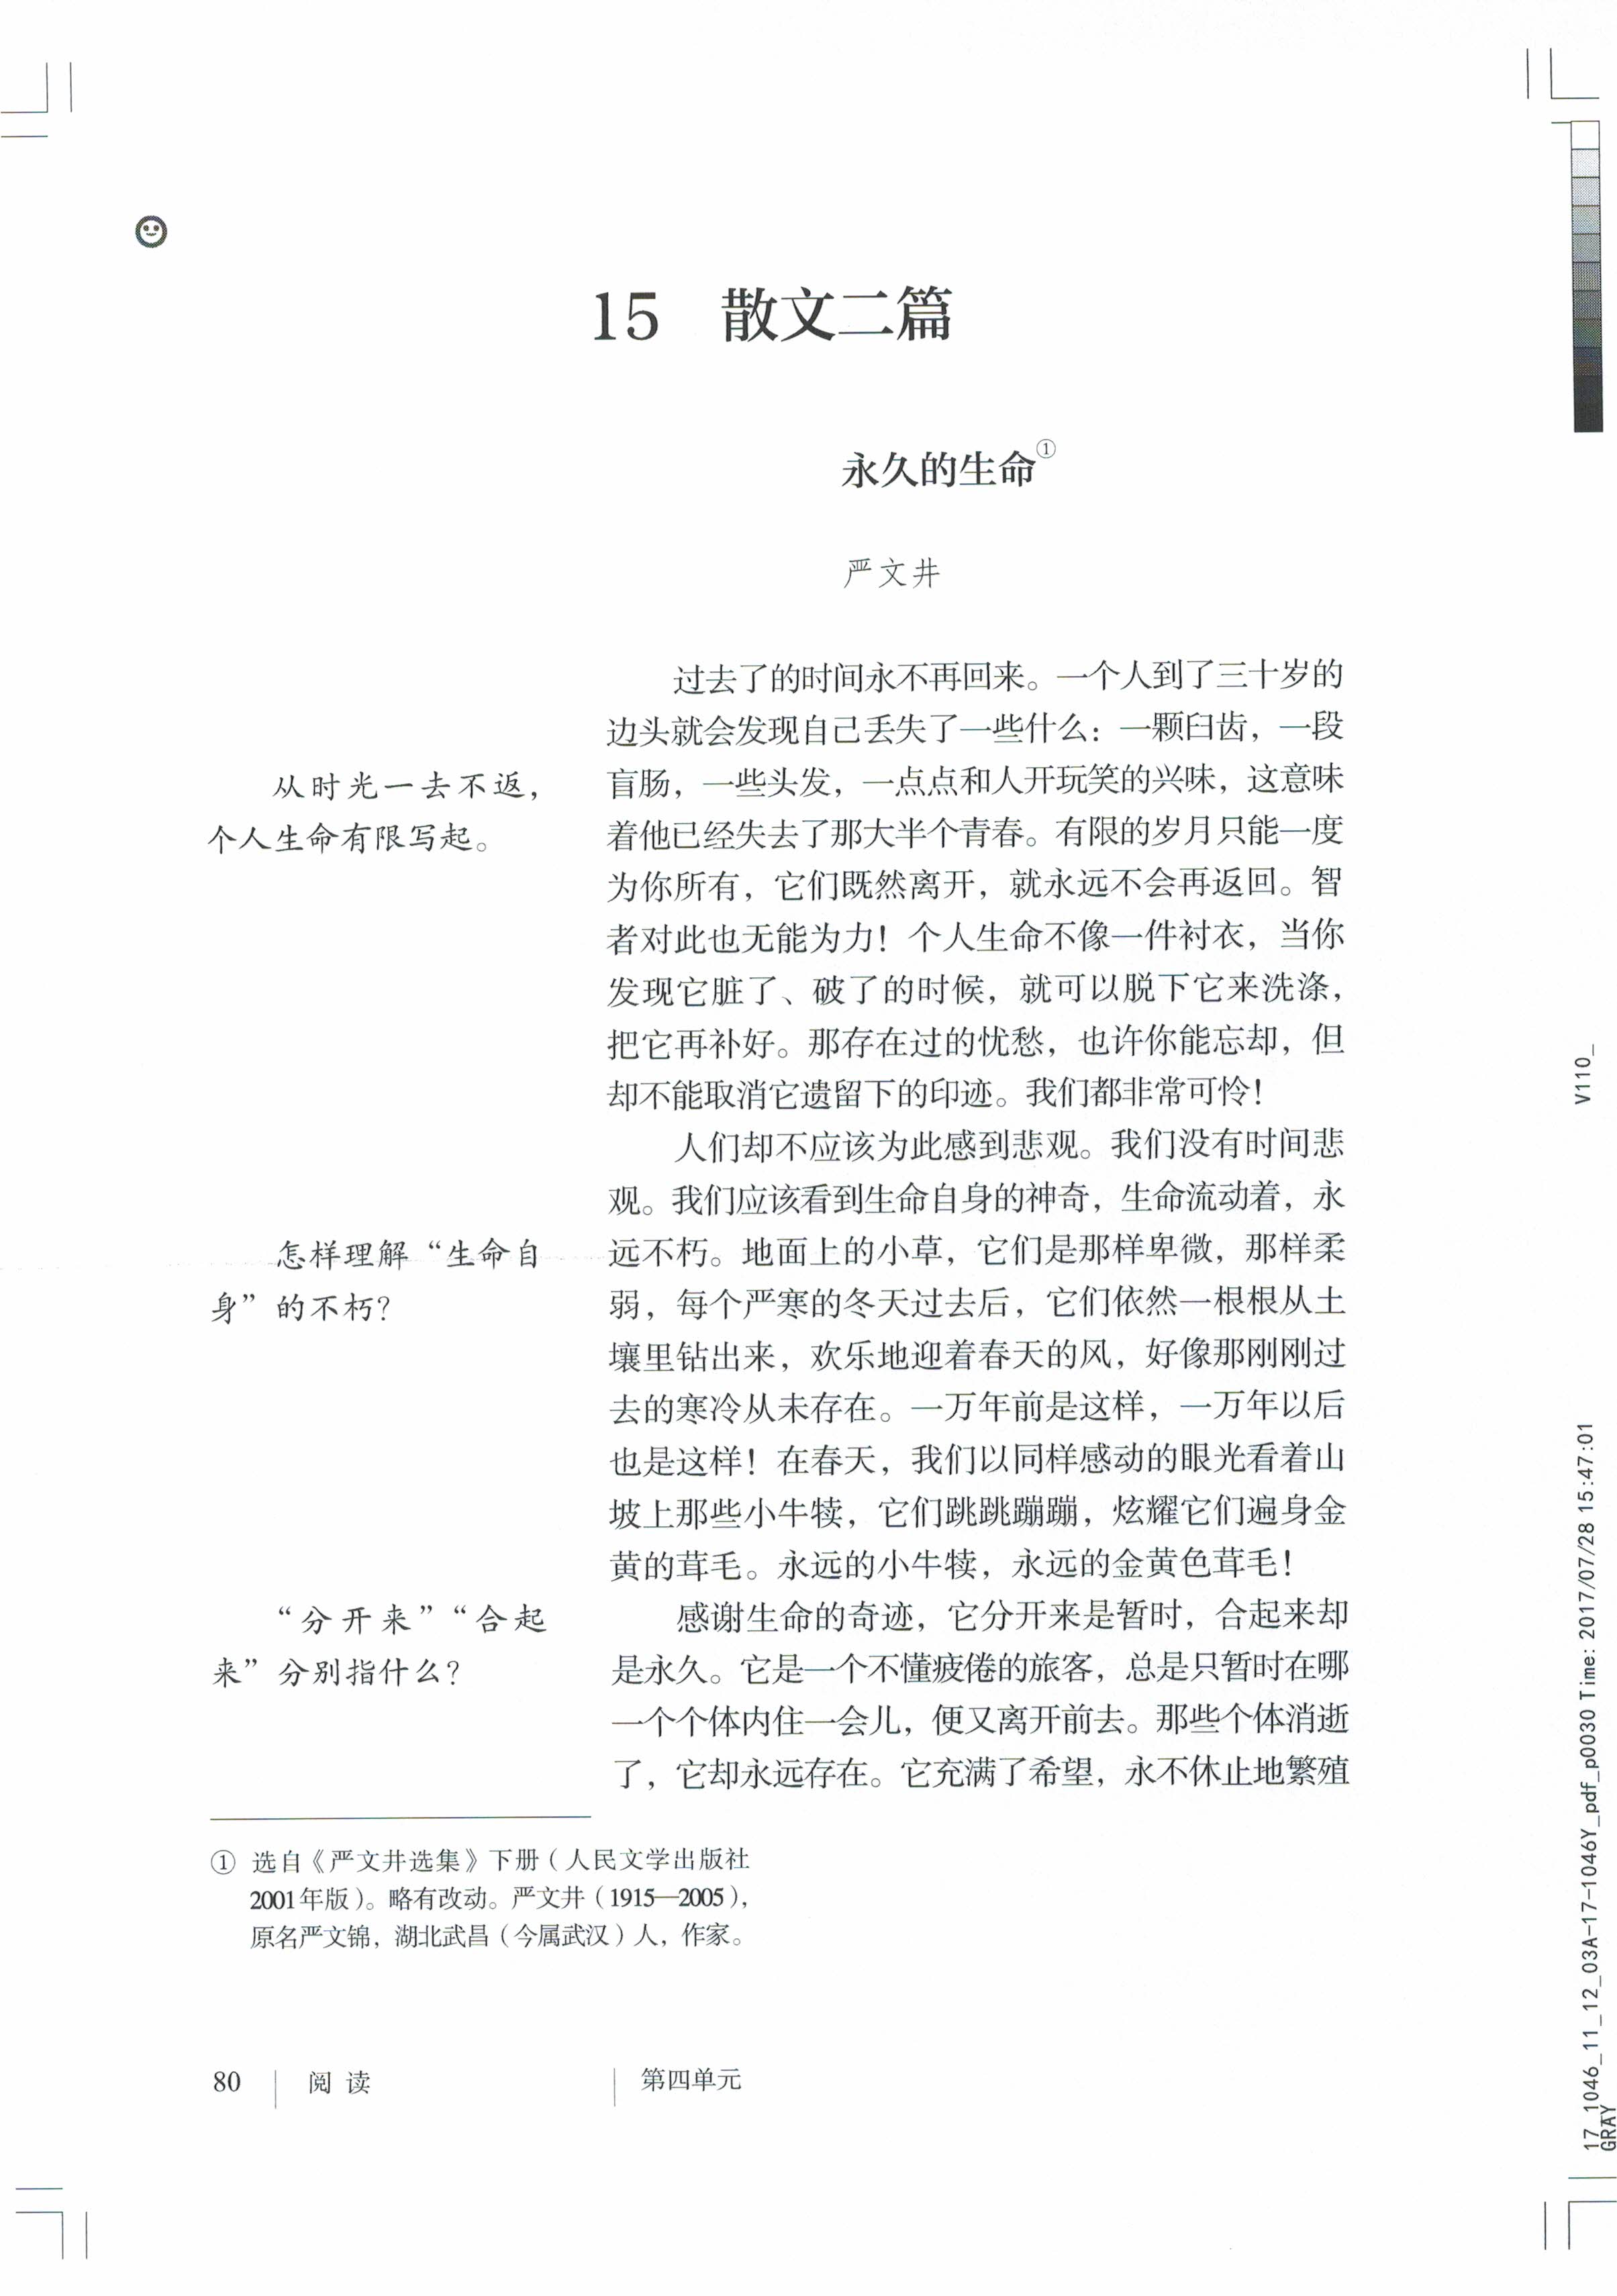 永久的生命严文井(Page80)